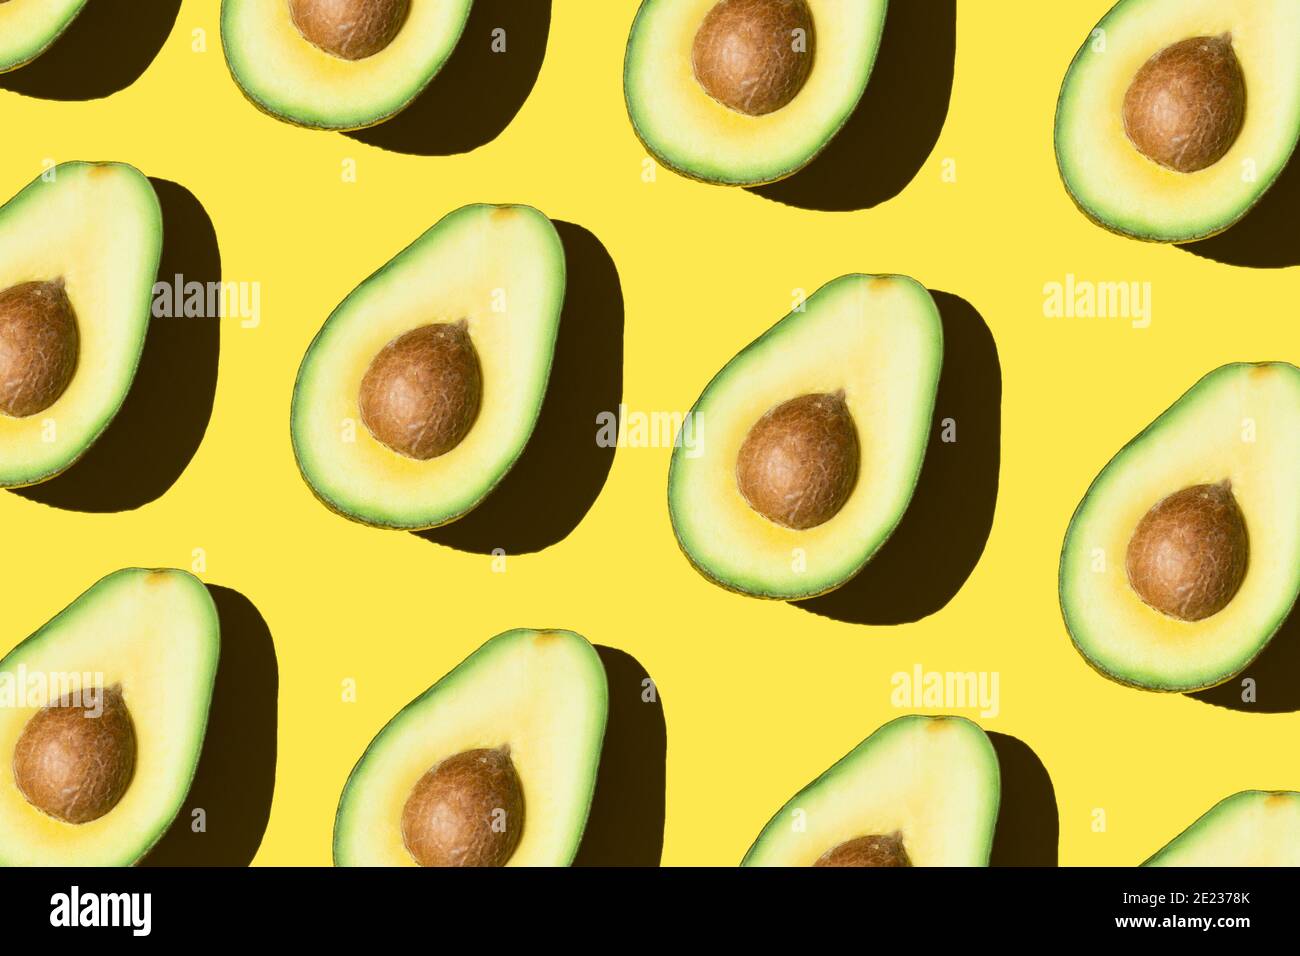 Modello di avocado su sfondo giallo cibo sano verde vegetale minimal moderno Foto Stock